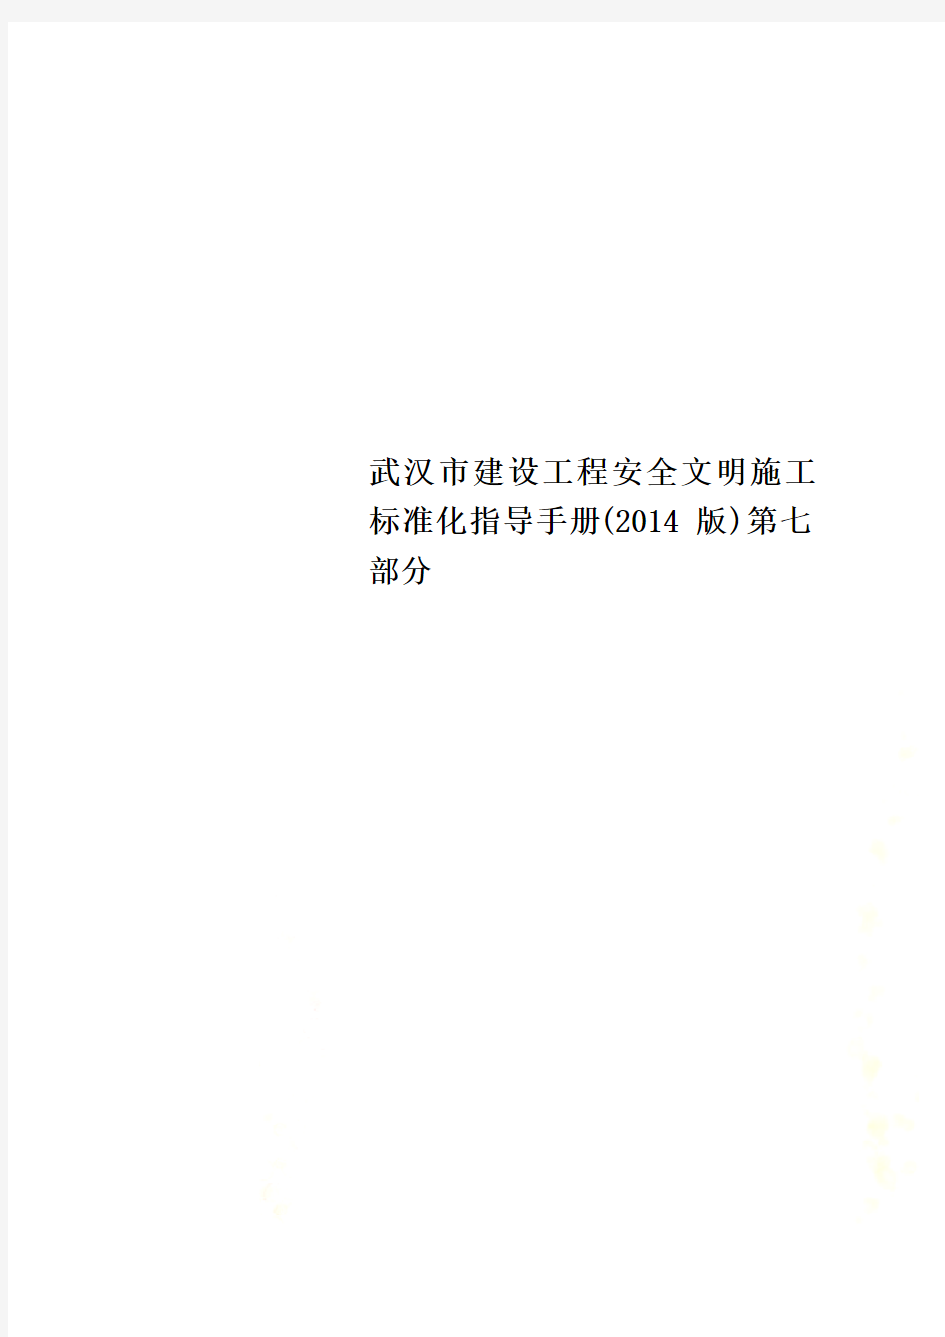 武汉市建设工程安全文明施工标准化指导手册(2014版)第七部分